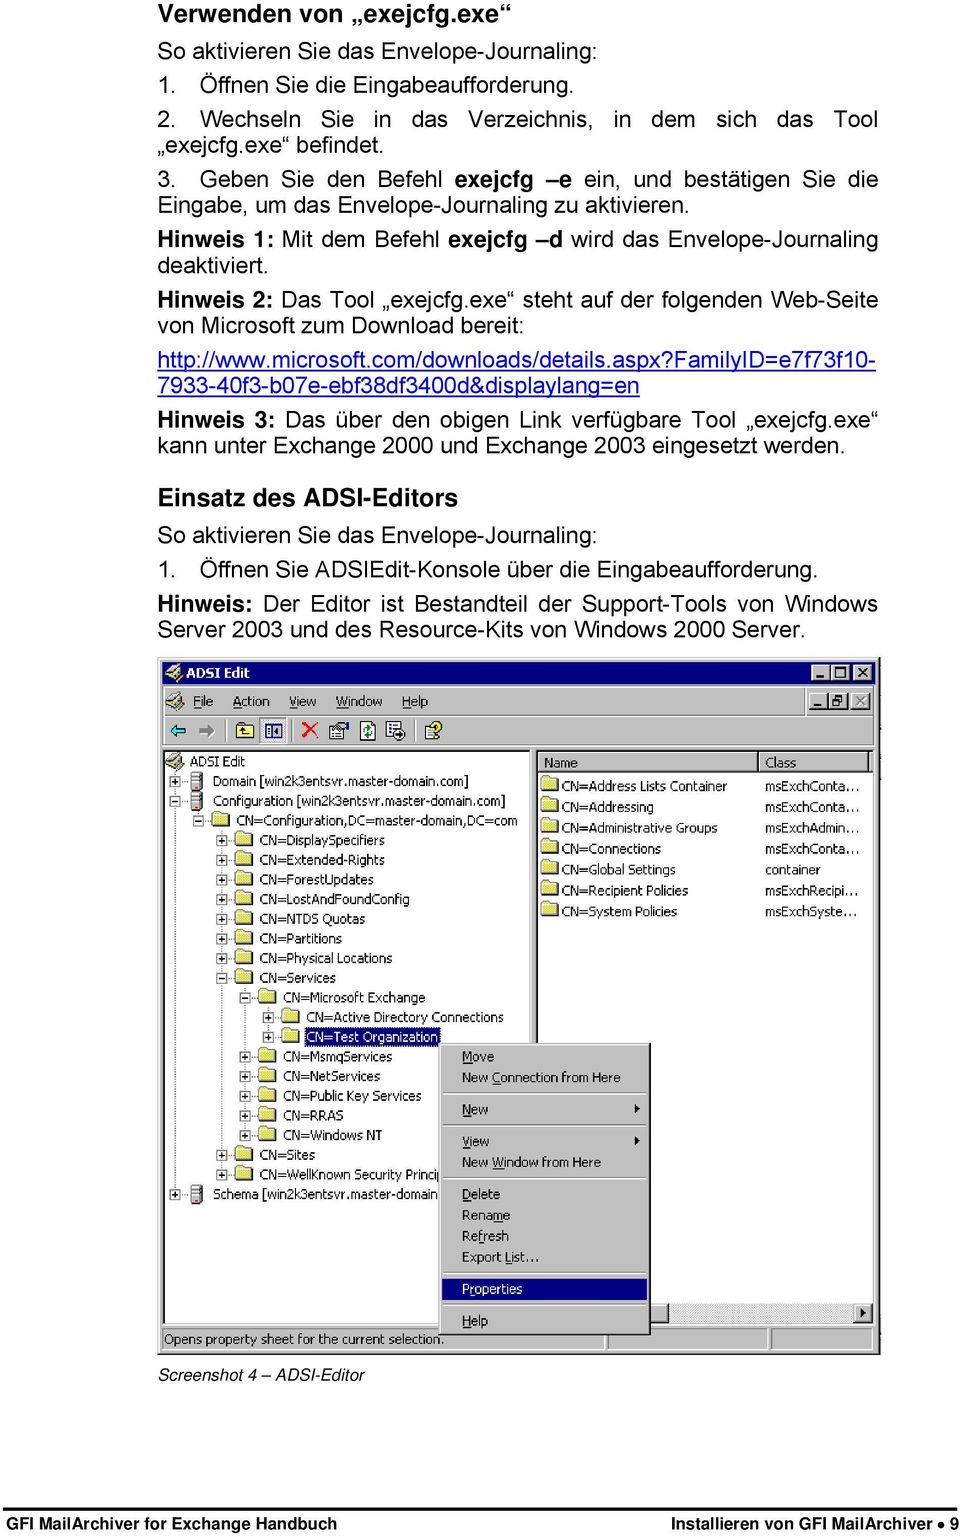 Hinweis 2: Das Tool exejcfg.exe steht auf der folgenden Web-Seite von Microsoft zum Download bereit: http://www.microsoft.com/downloads/details.aspx?